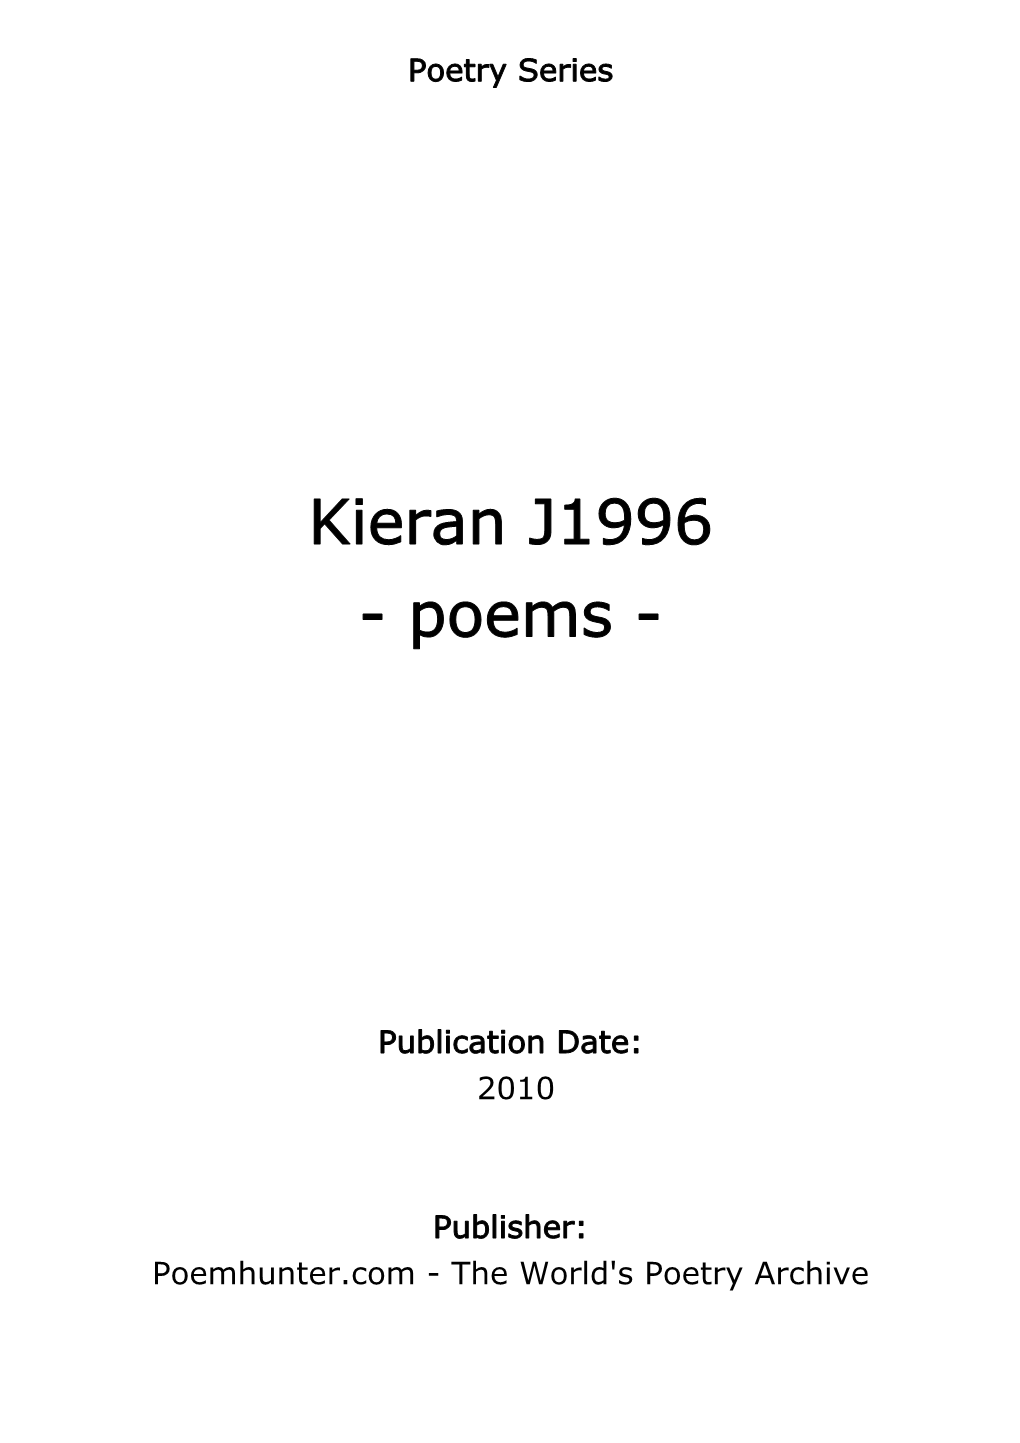 Kieran J1996 - Poems